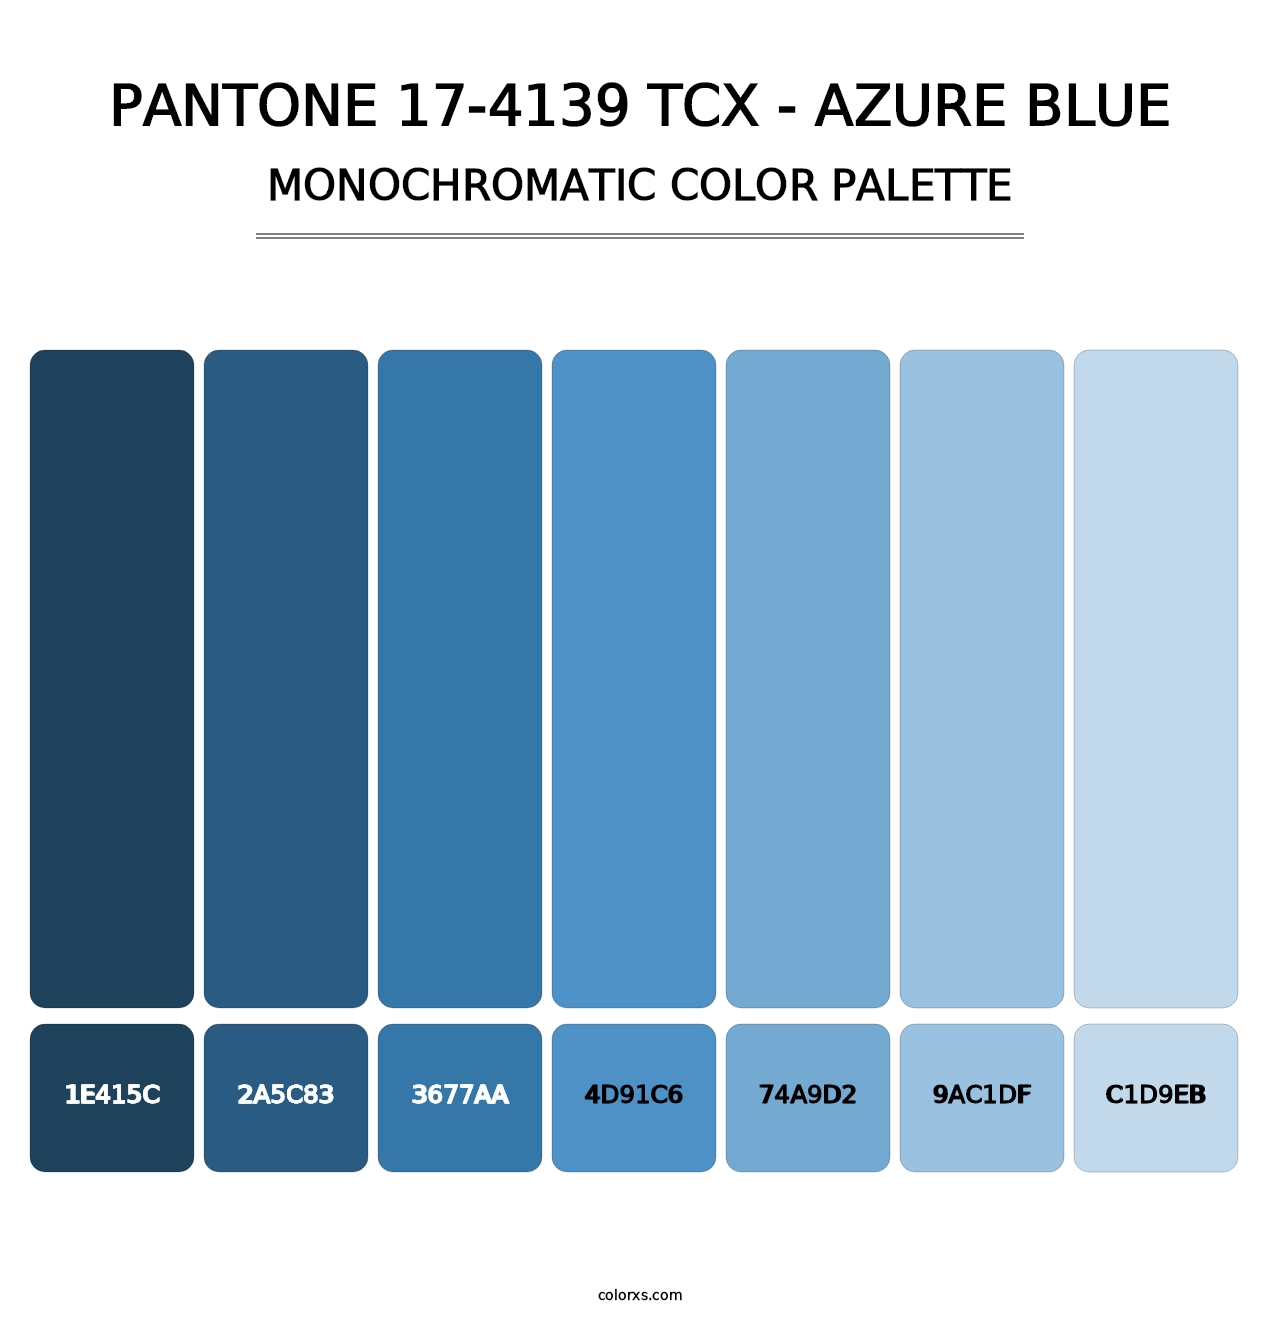 PANTONE 17-4139 TCX - Azure Blue - Monochromatic Color Palette